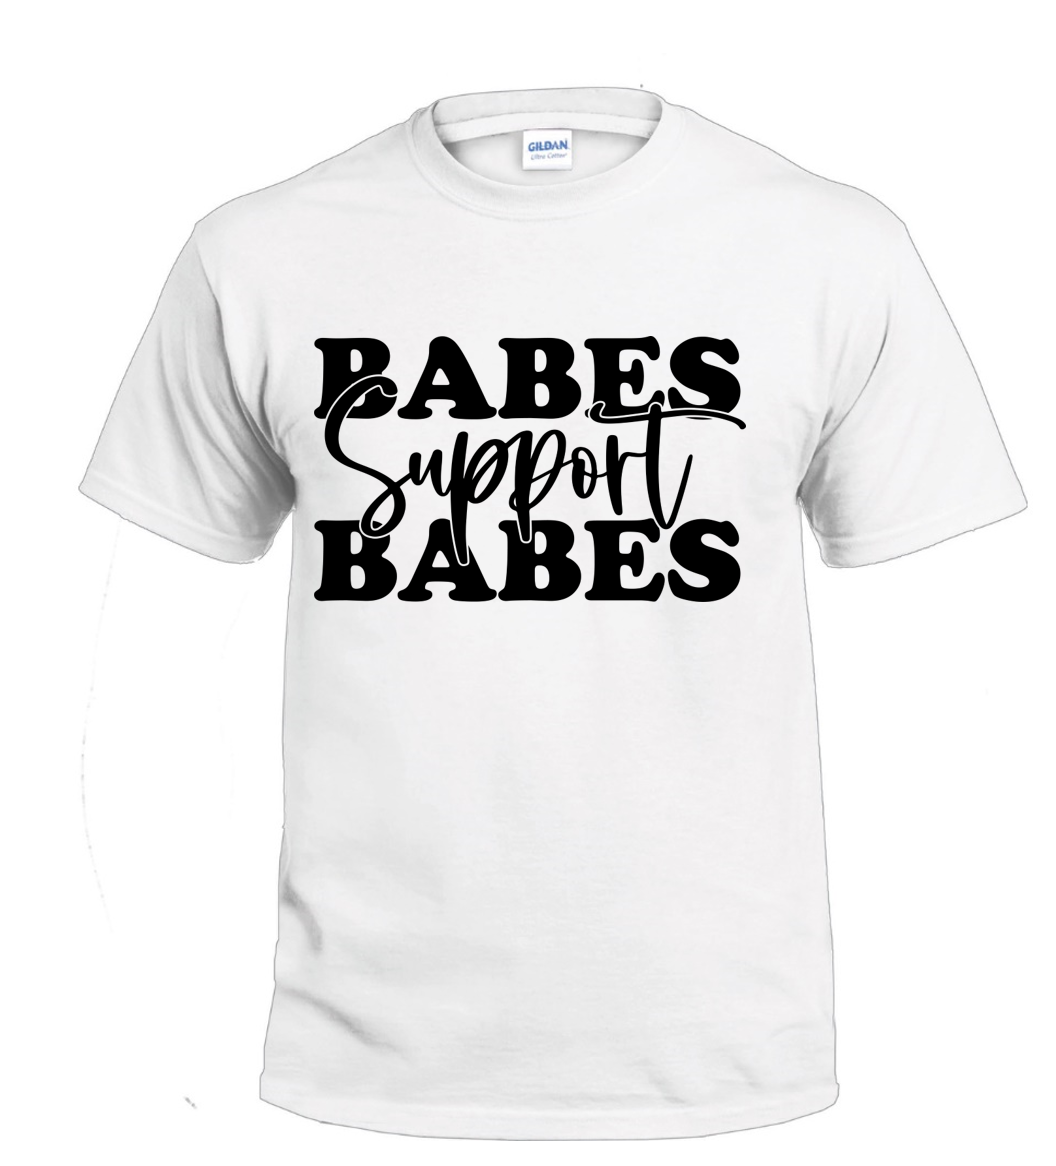 Babes Support Babes t-shirt